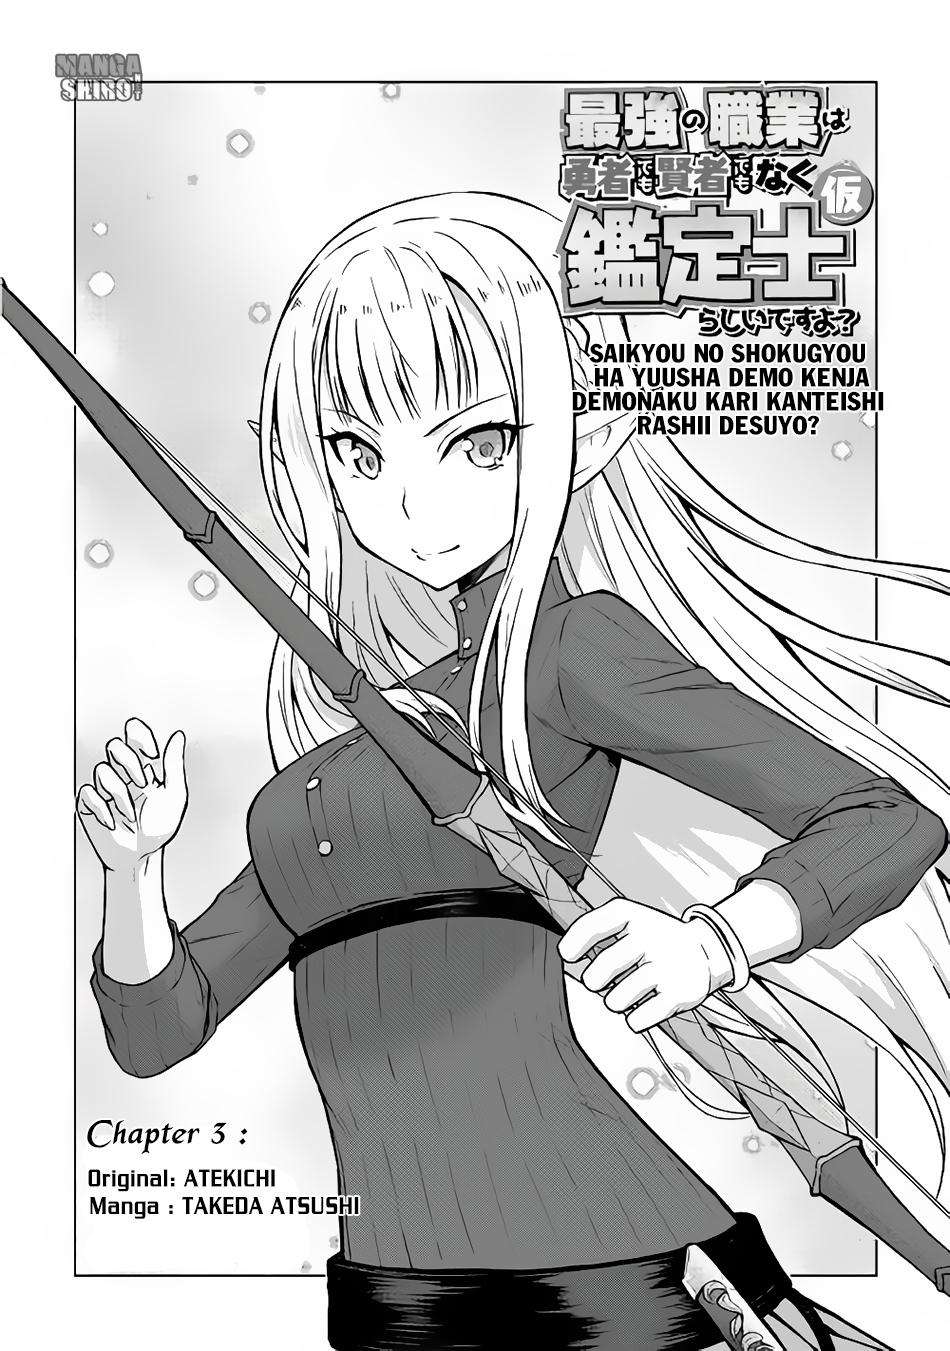 Baca Manga Saikyou no Shokugyou wa Yuusha demo Kenja demo naku Kanteishi (Kari) rashii desu yo? Chapter 3 Gambar 2